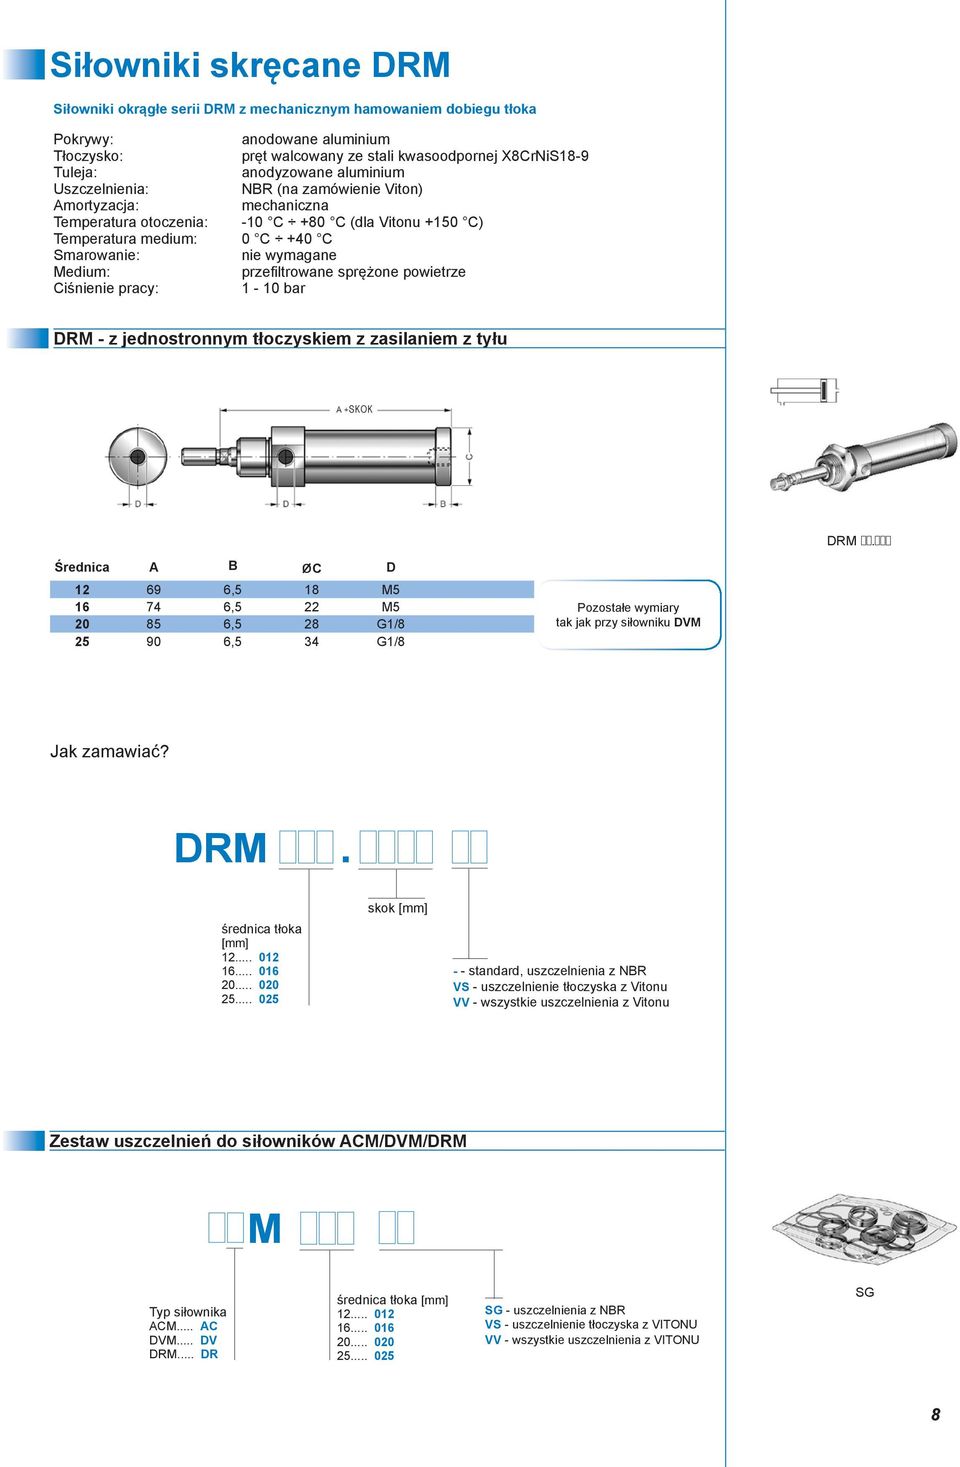 Medium: przefiltrowane sprężone powietrze Ciśnienie pracy: 1-10 bar DRM - z jednostronnym tłoczyskiem z zasilaniem z tyłu DRM.